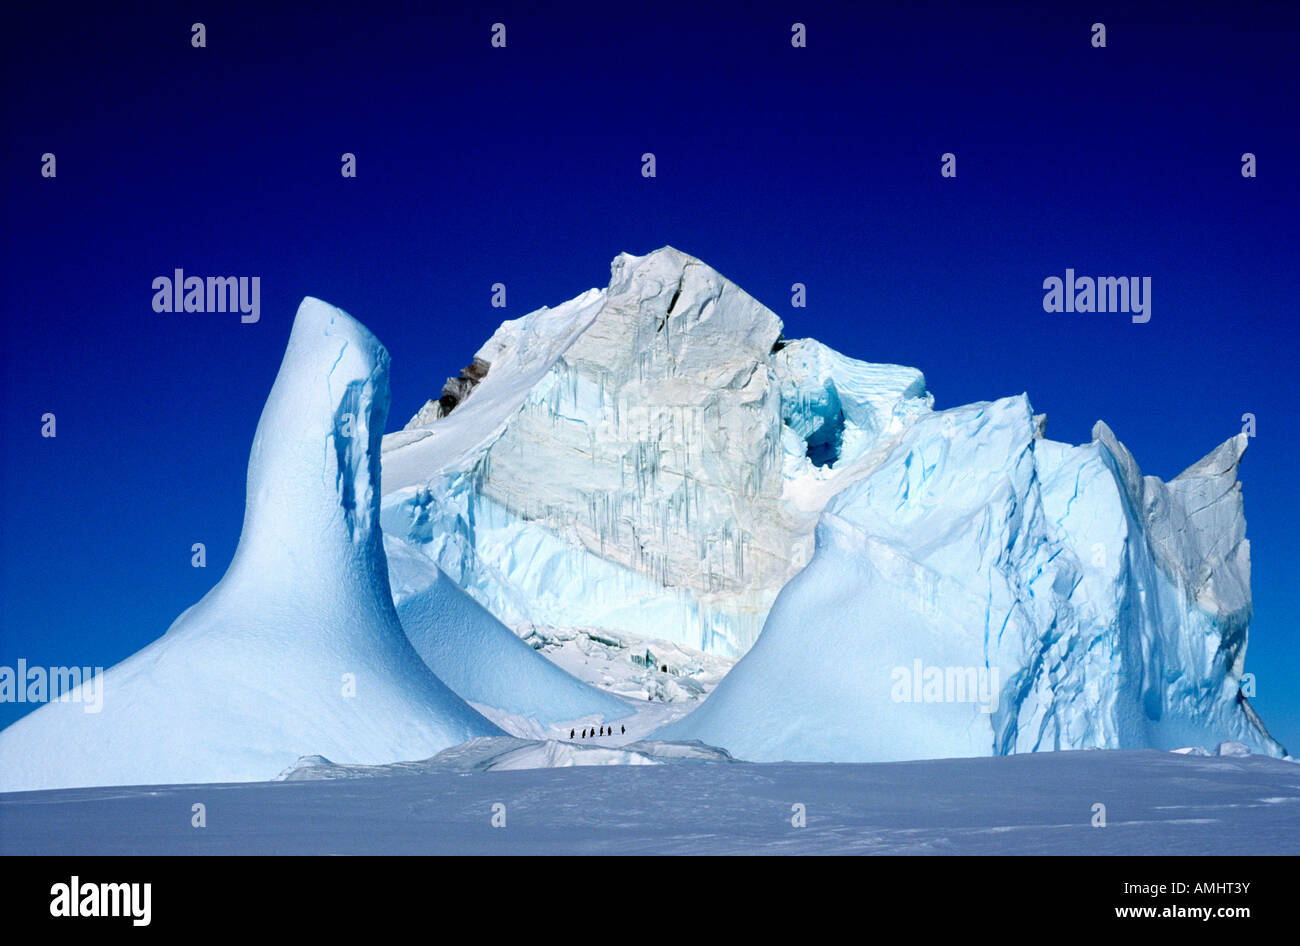 Eisberg Antarktis Antarktis Geographie Querformat Eisberg Eis Landschaften Meer der antarktische Wasser Stockfoto